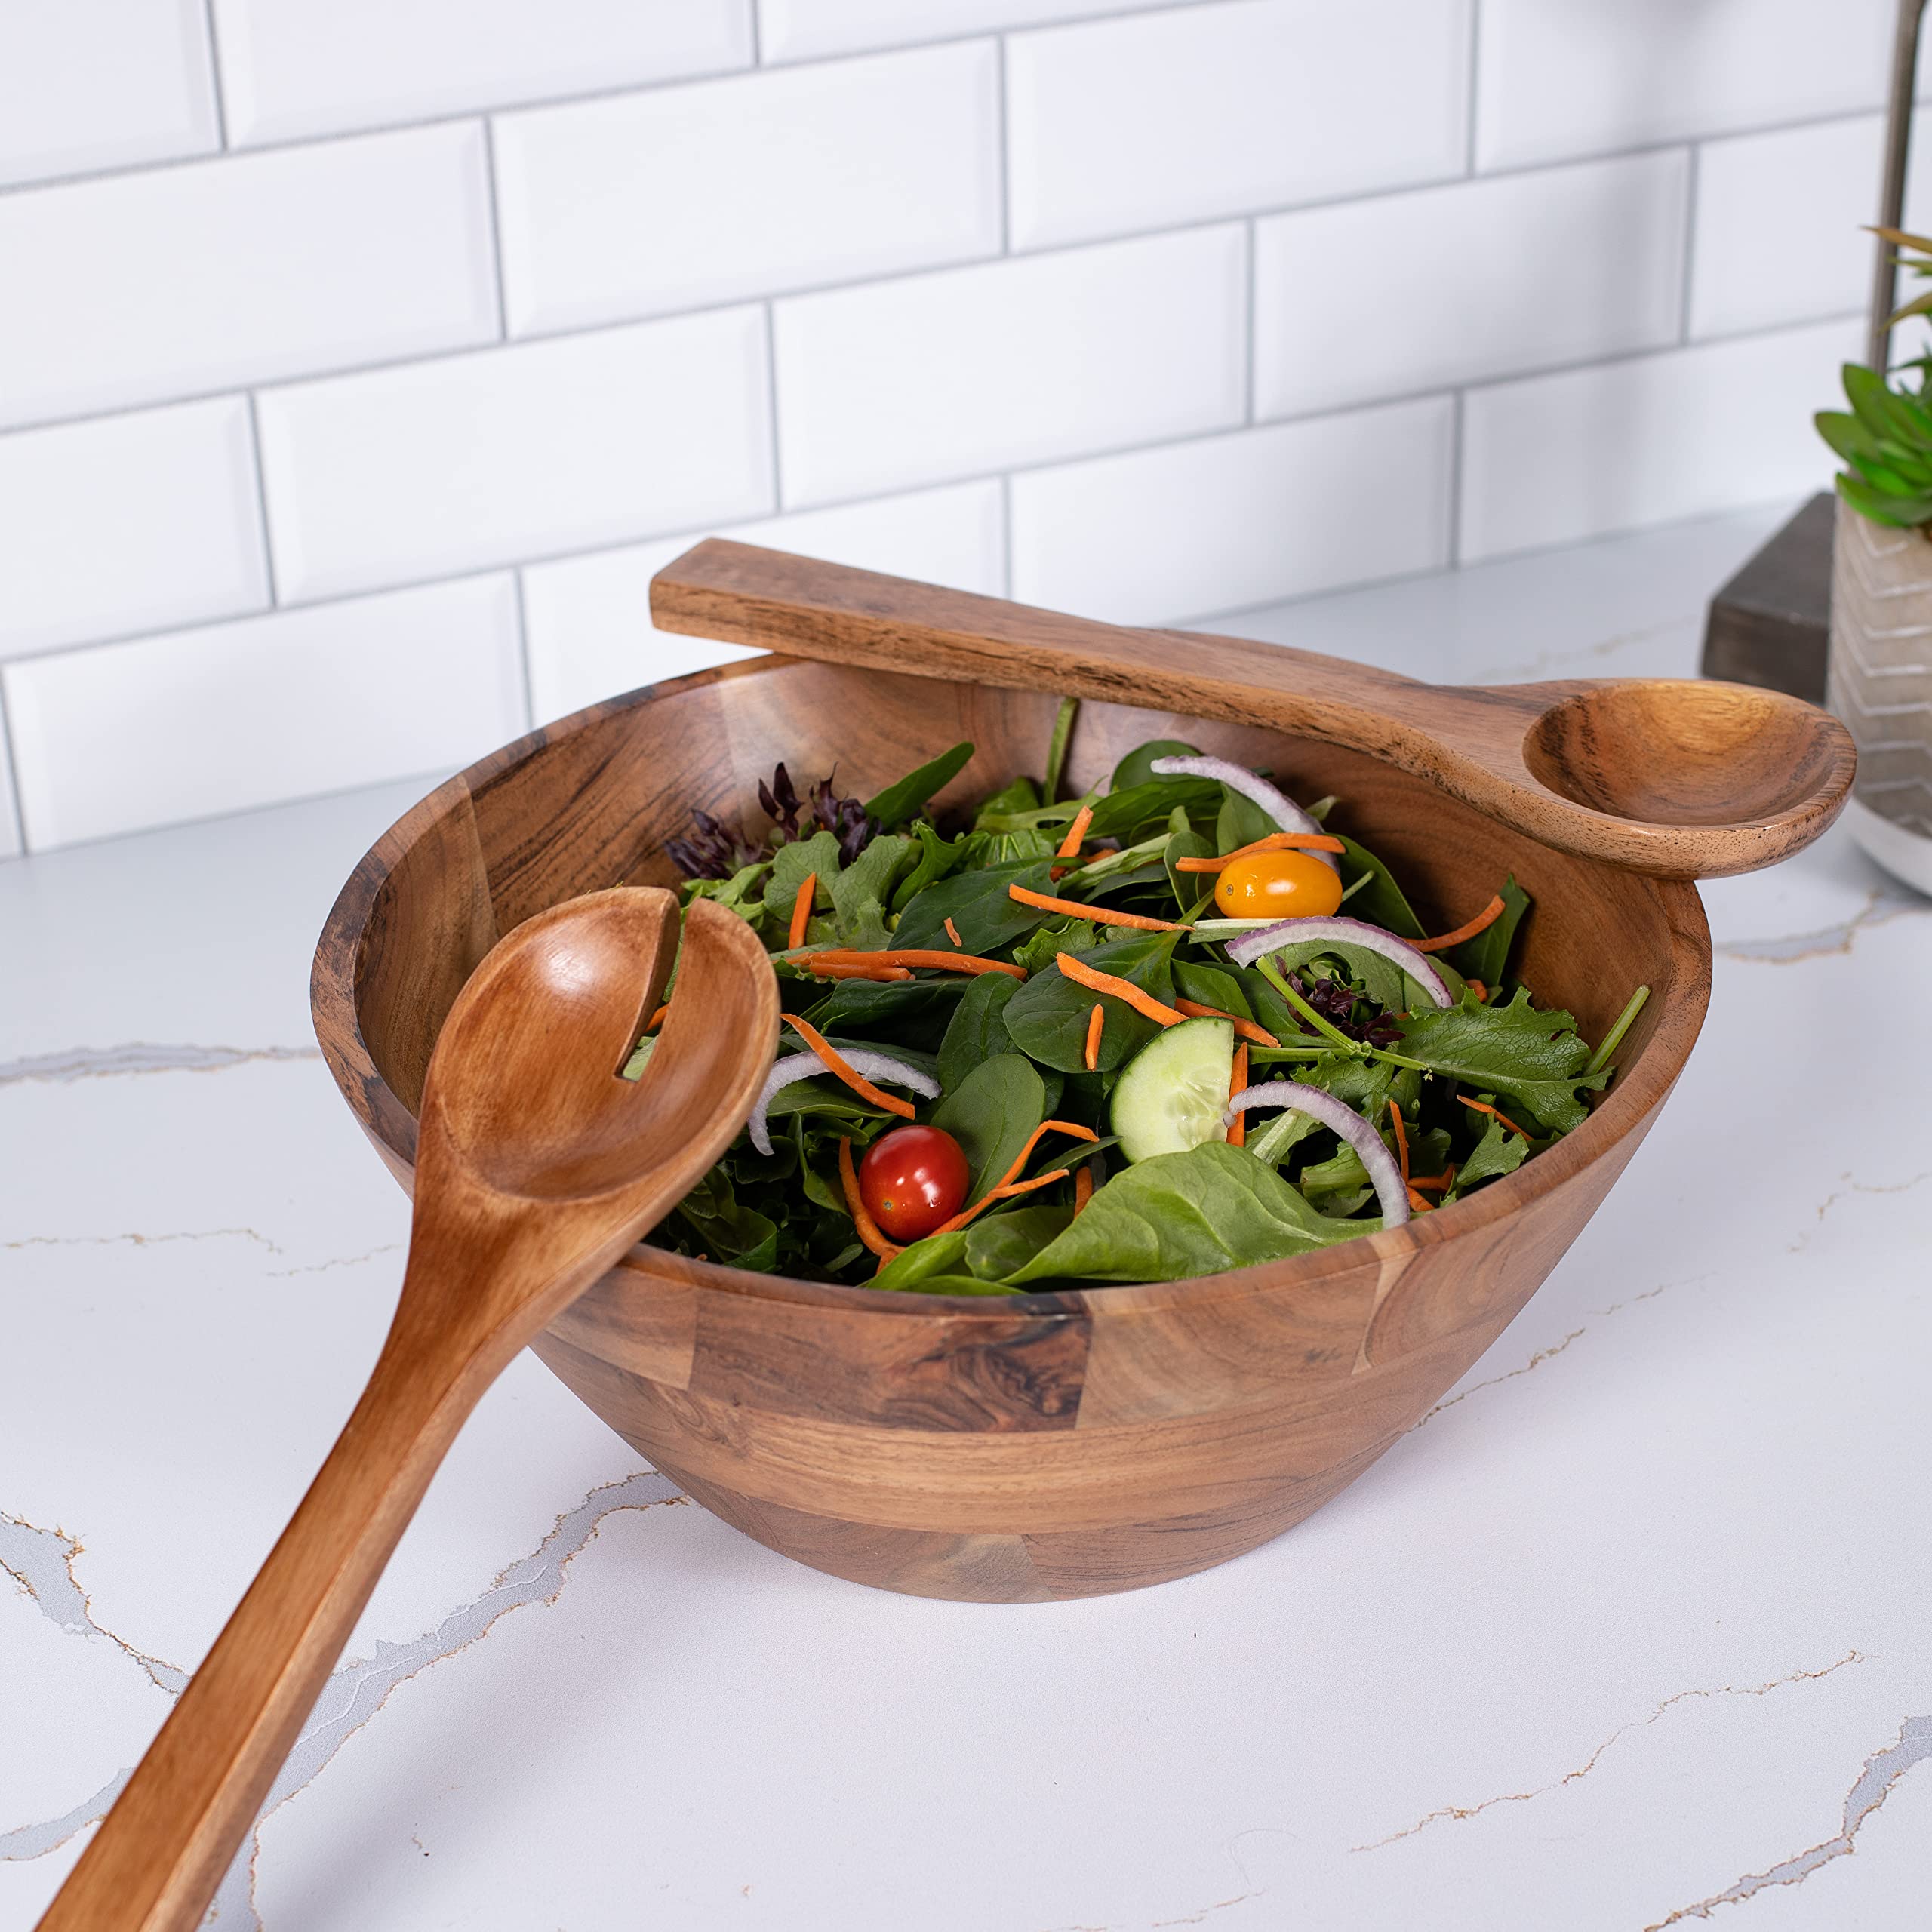 BIRDROCK HOME 3 Piece Wooden Salad Serving Bowl and Utensils | Acacia Wood Server Set | Salad, Fruit or Side Hands | Large